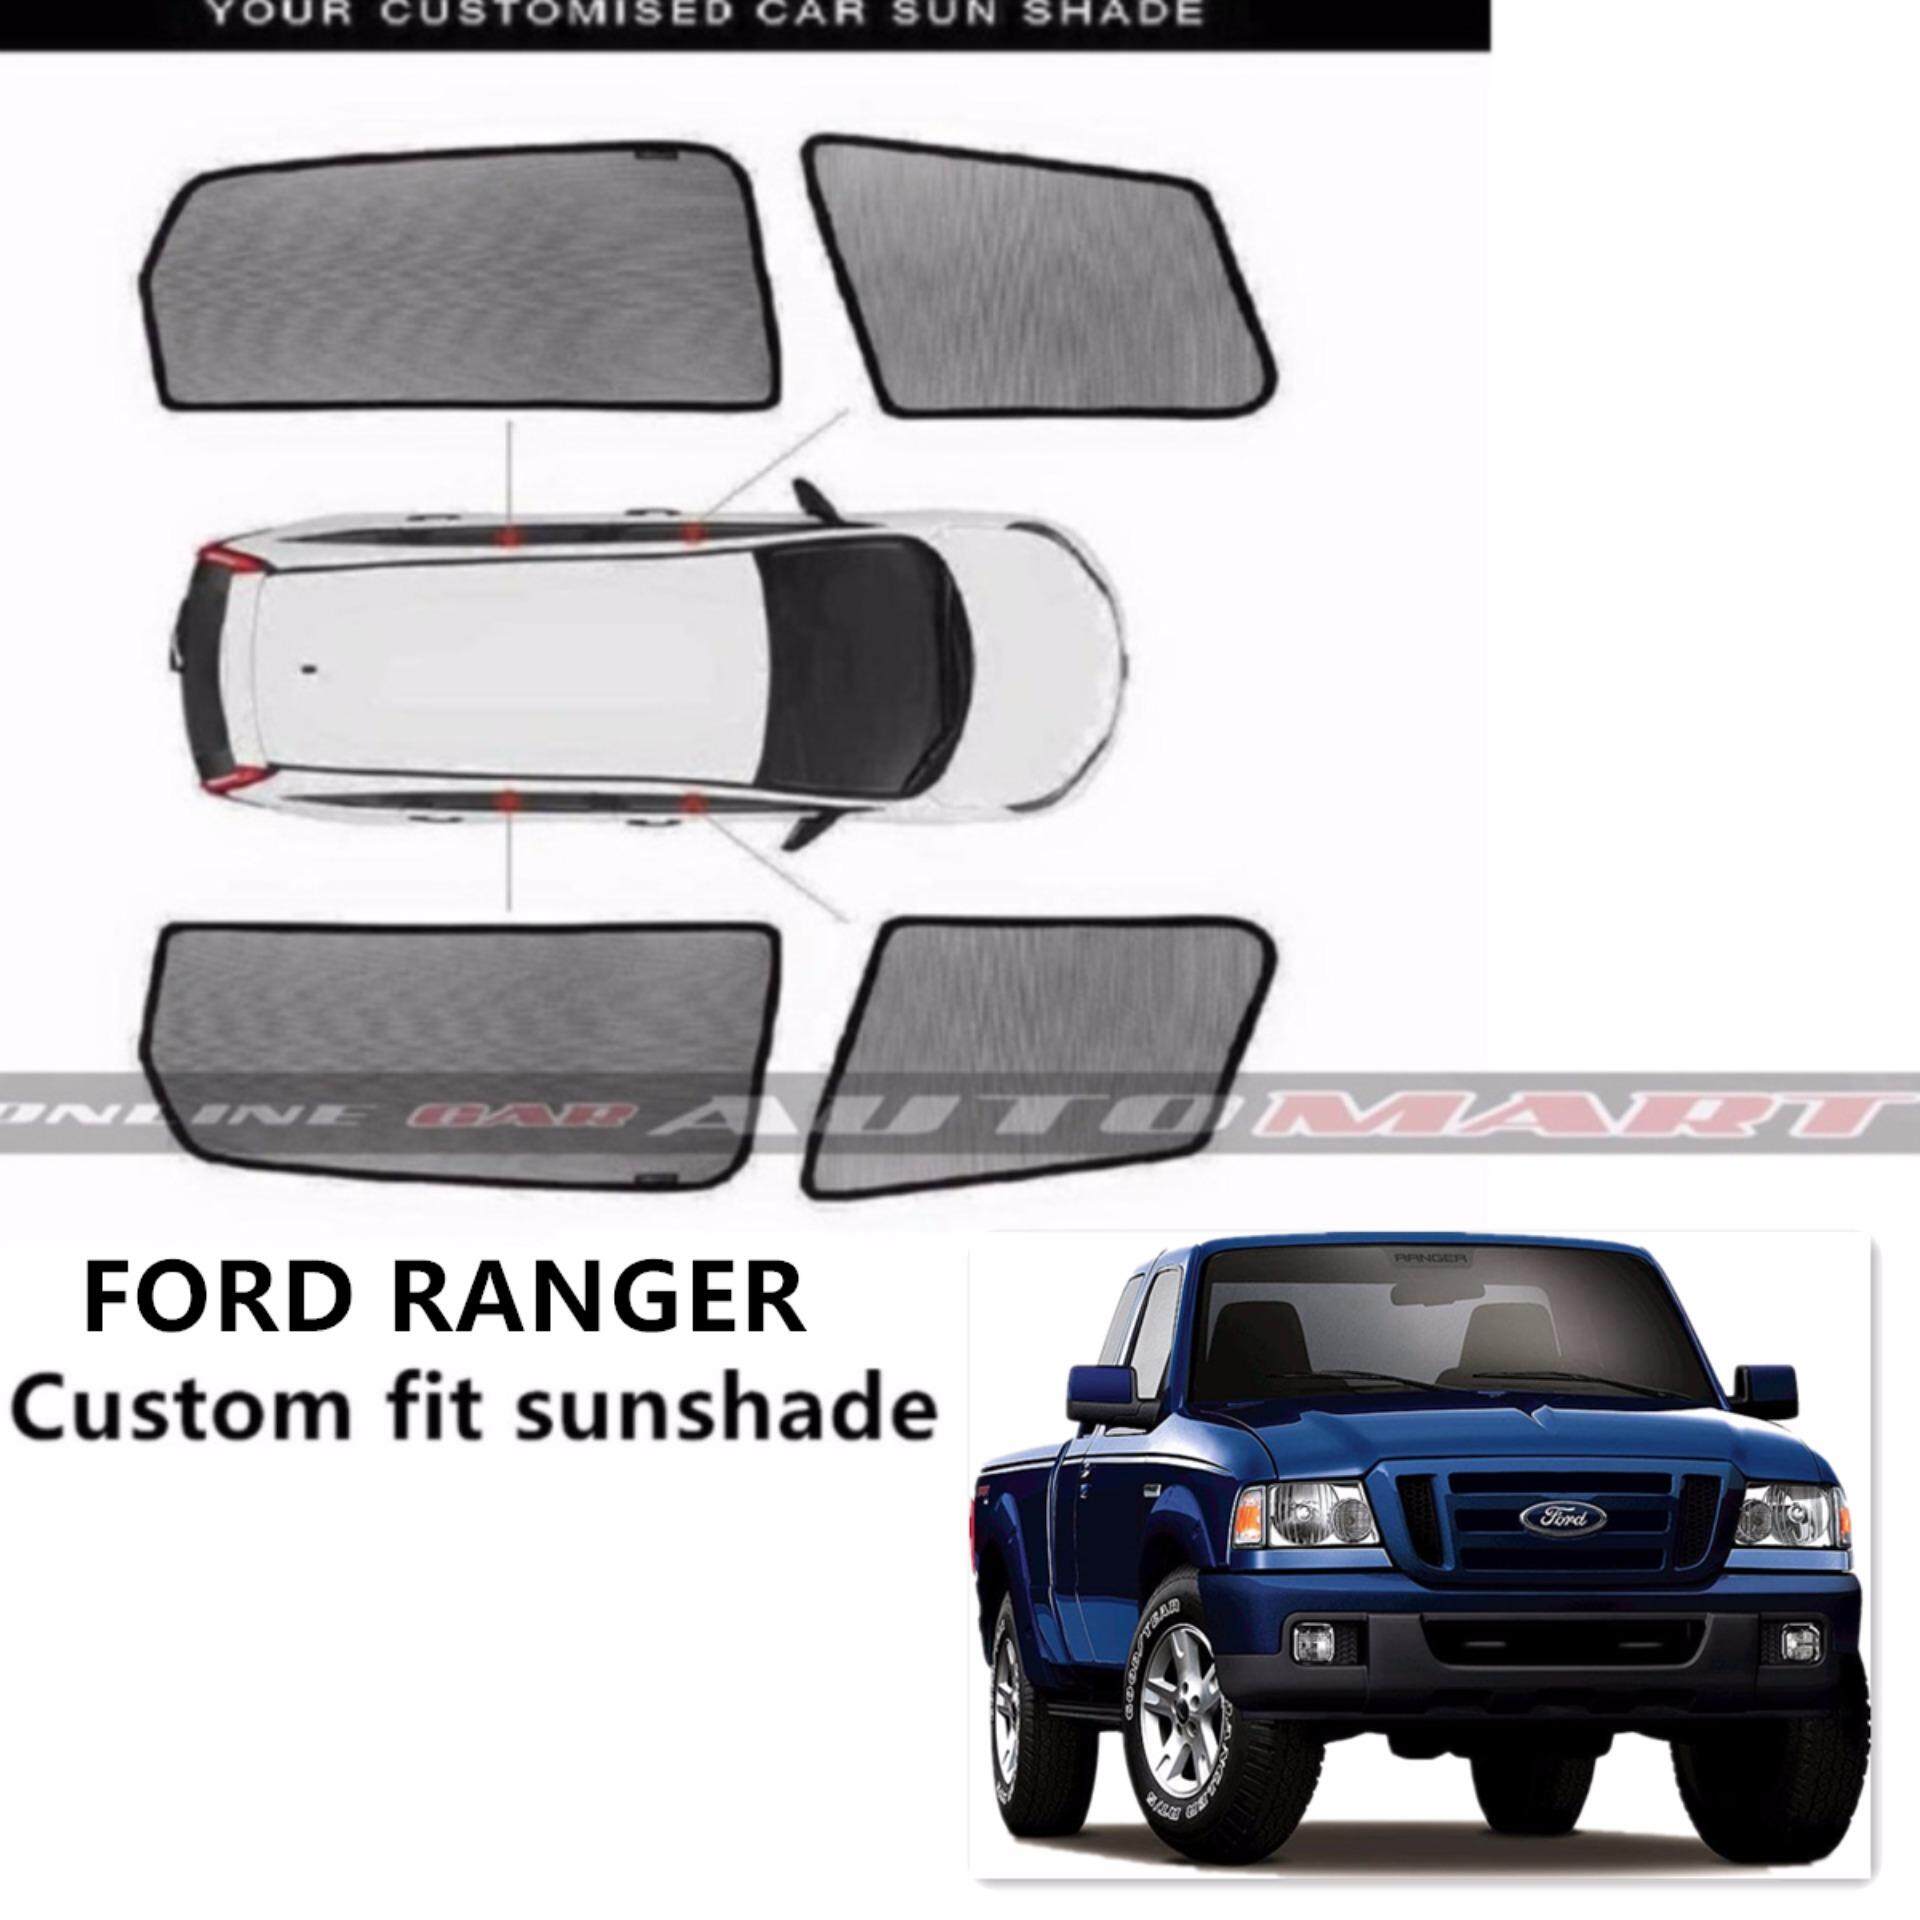 Custom Fit OEM Sunshades/ Sun shades for Ford Ranger - 4pcs